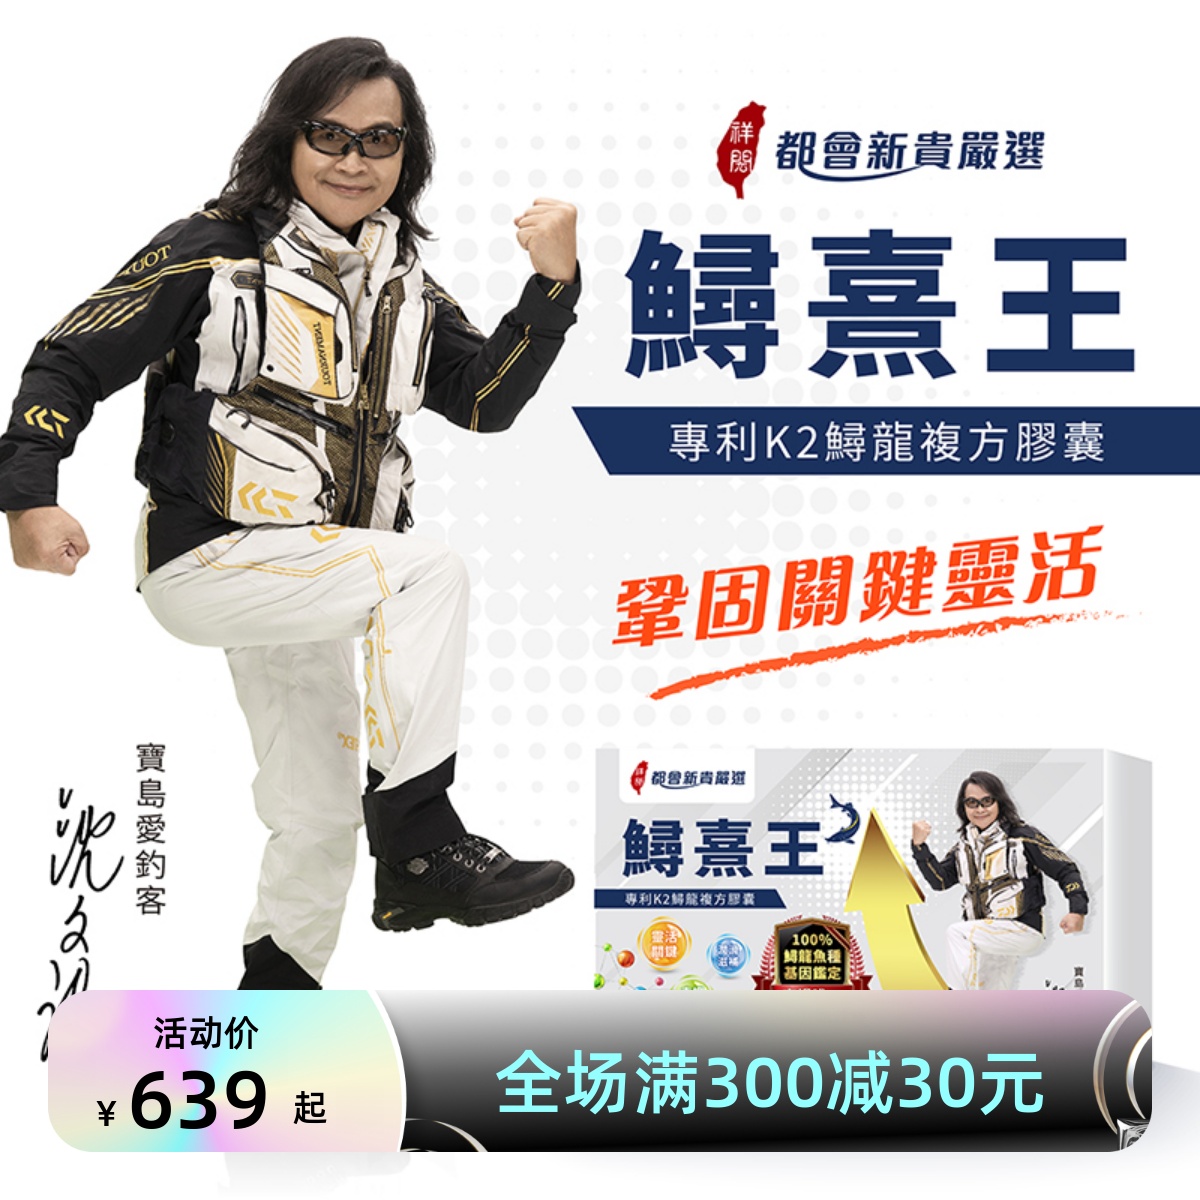 中国台湾电视都会新贵严选鲟熹王/鲟熹力专利K2萃取鲟龙复方胶囊